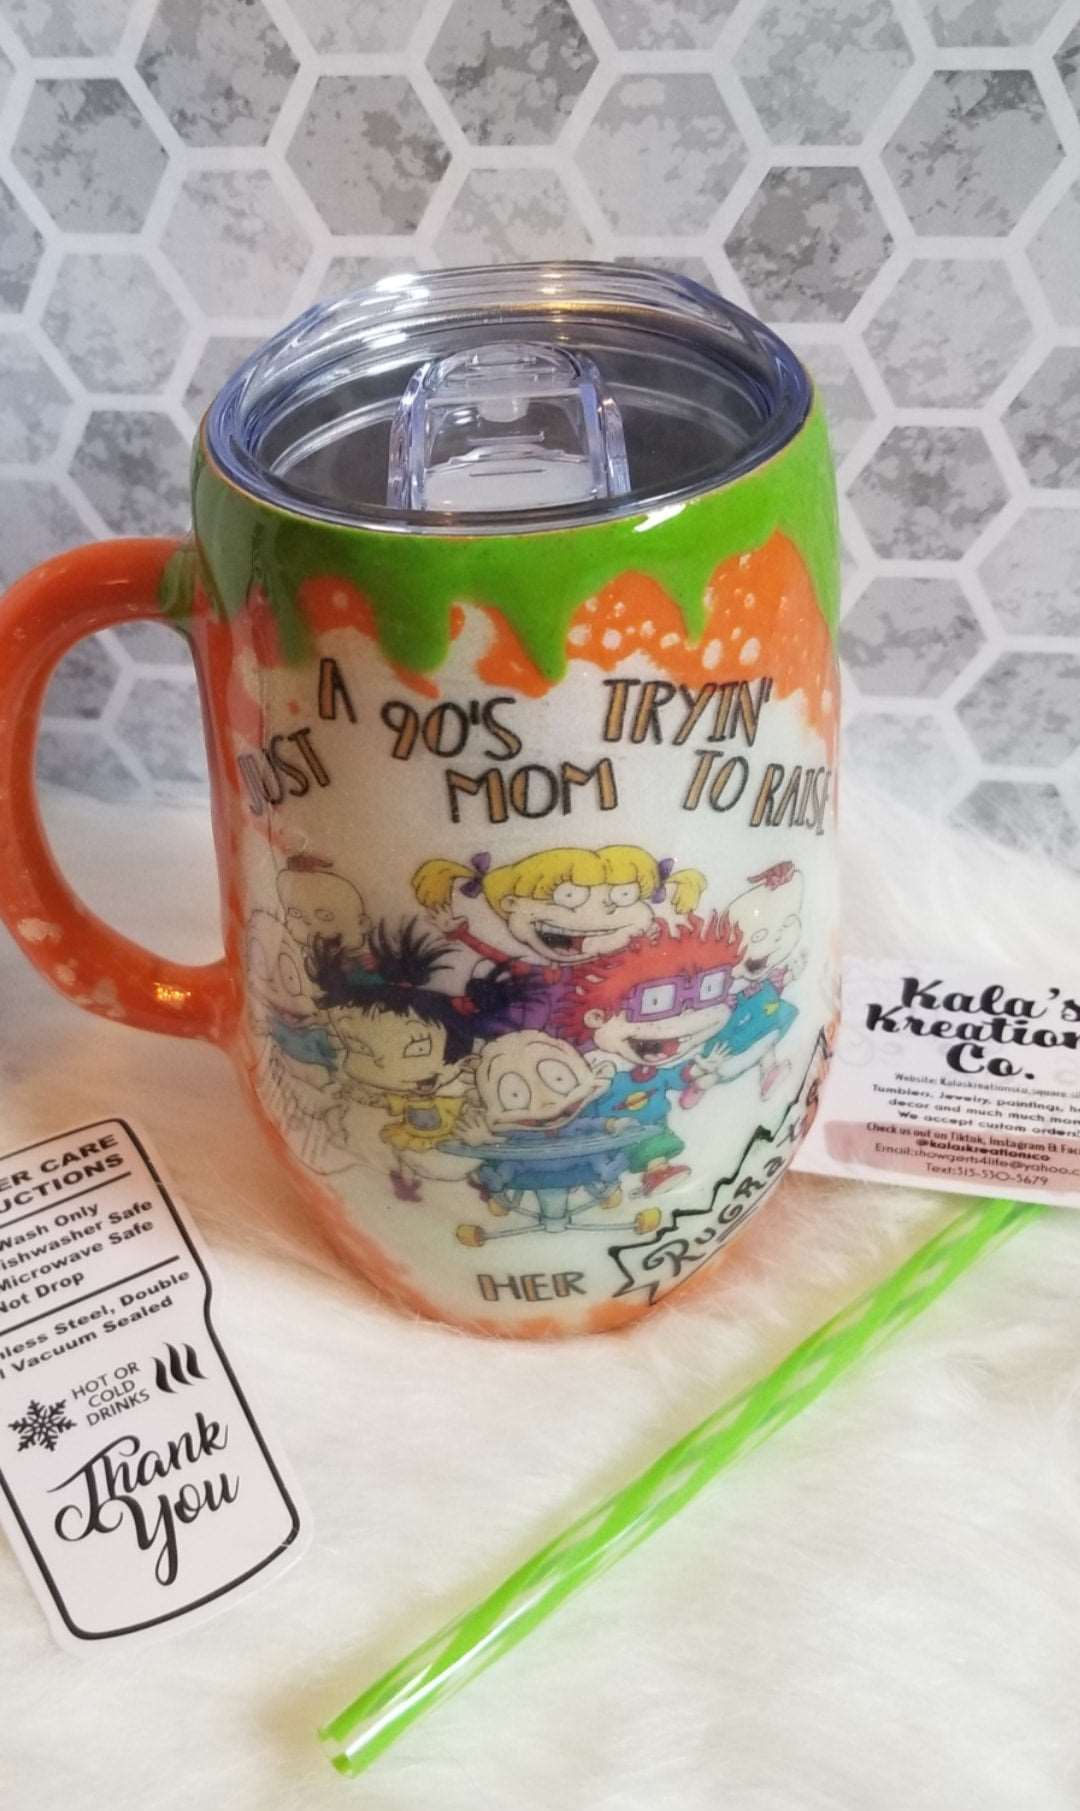 SUPER MOM mug —